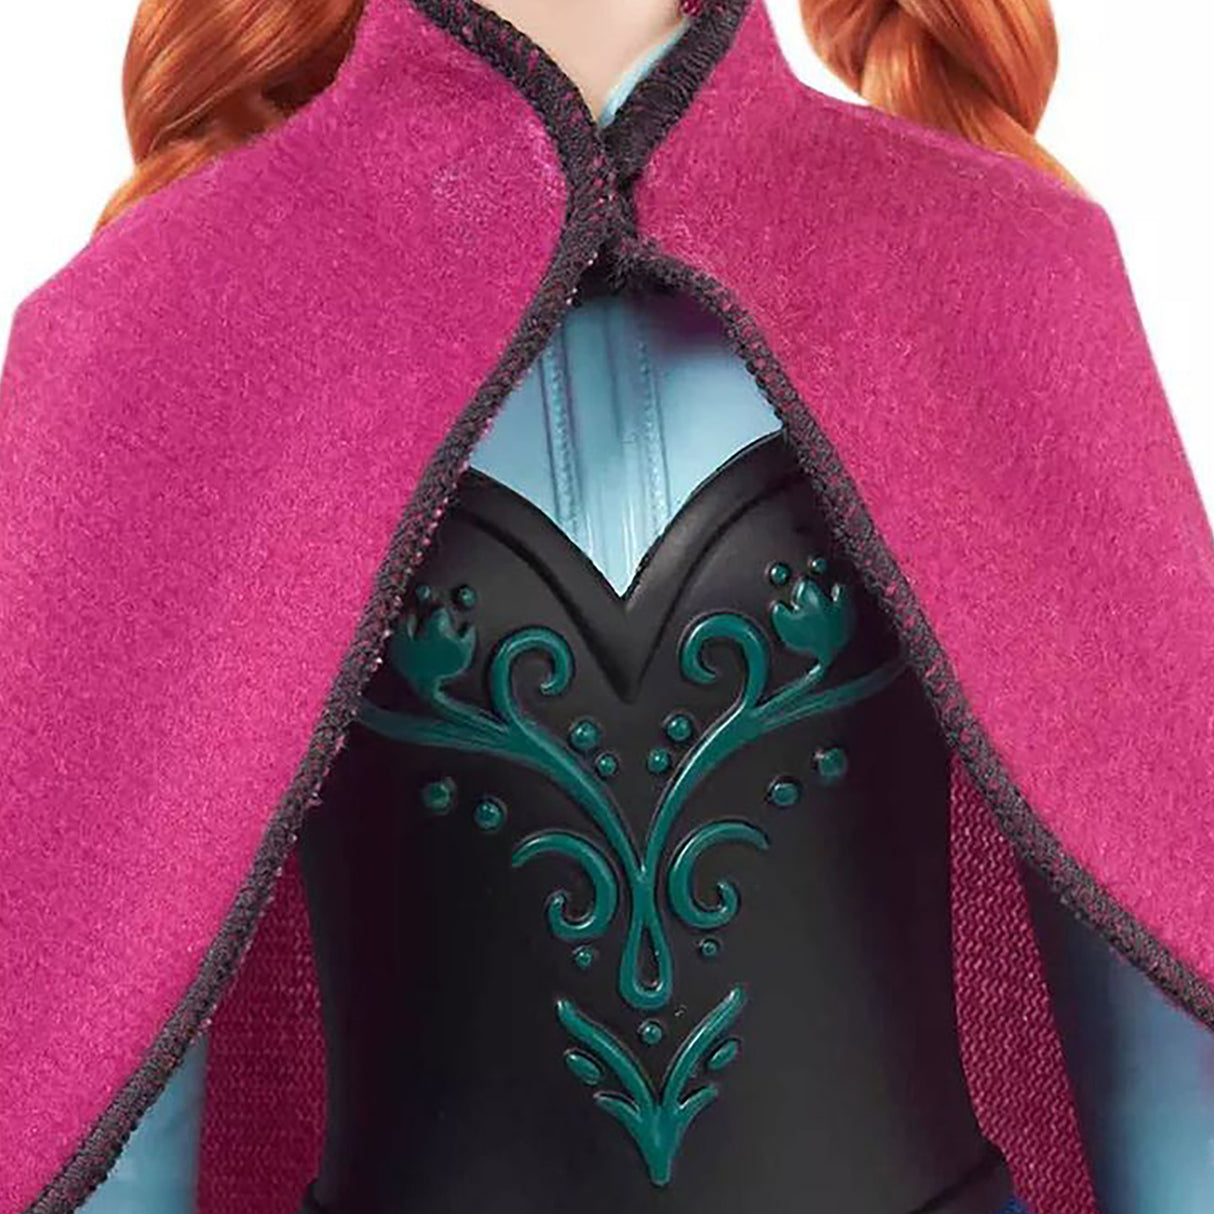 Disney Frozen Anna Doll HLW49